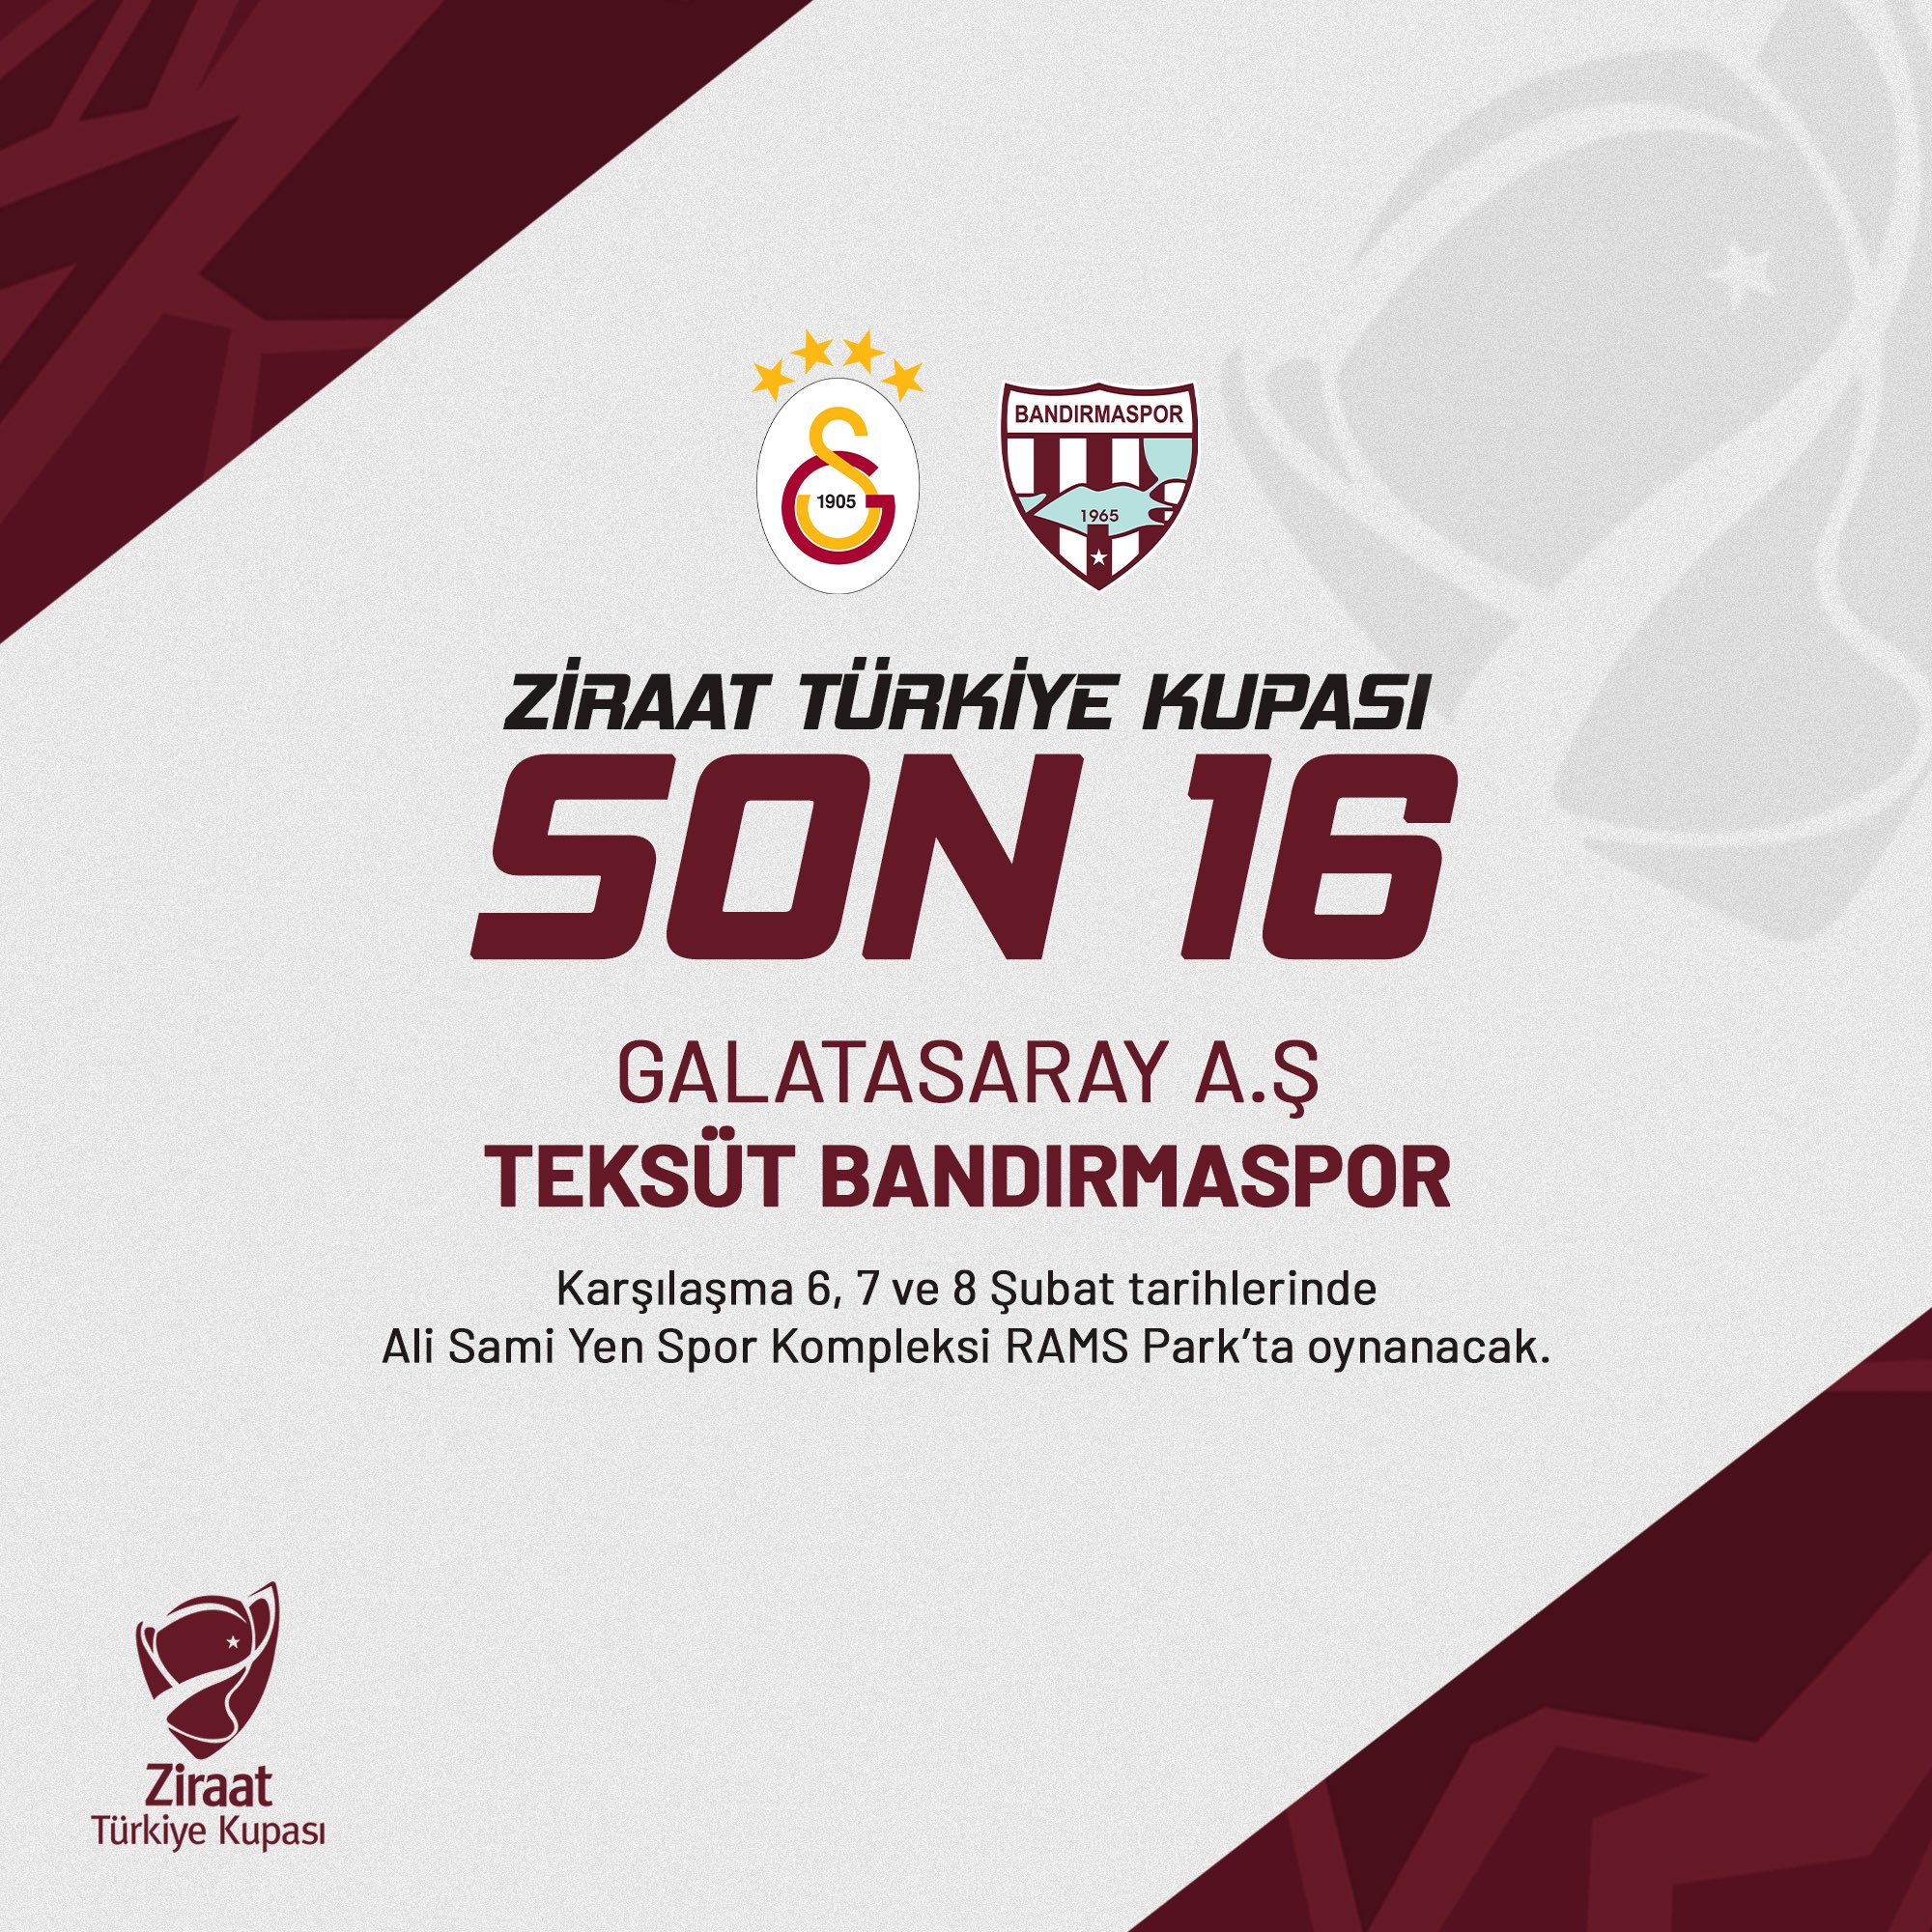 Galatasaray Bandırmaspor ile Son 16 Turunda Eşleşti